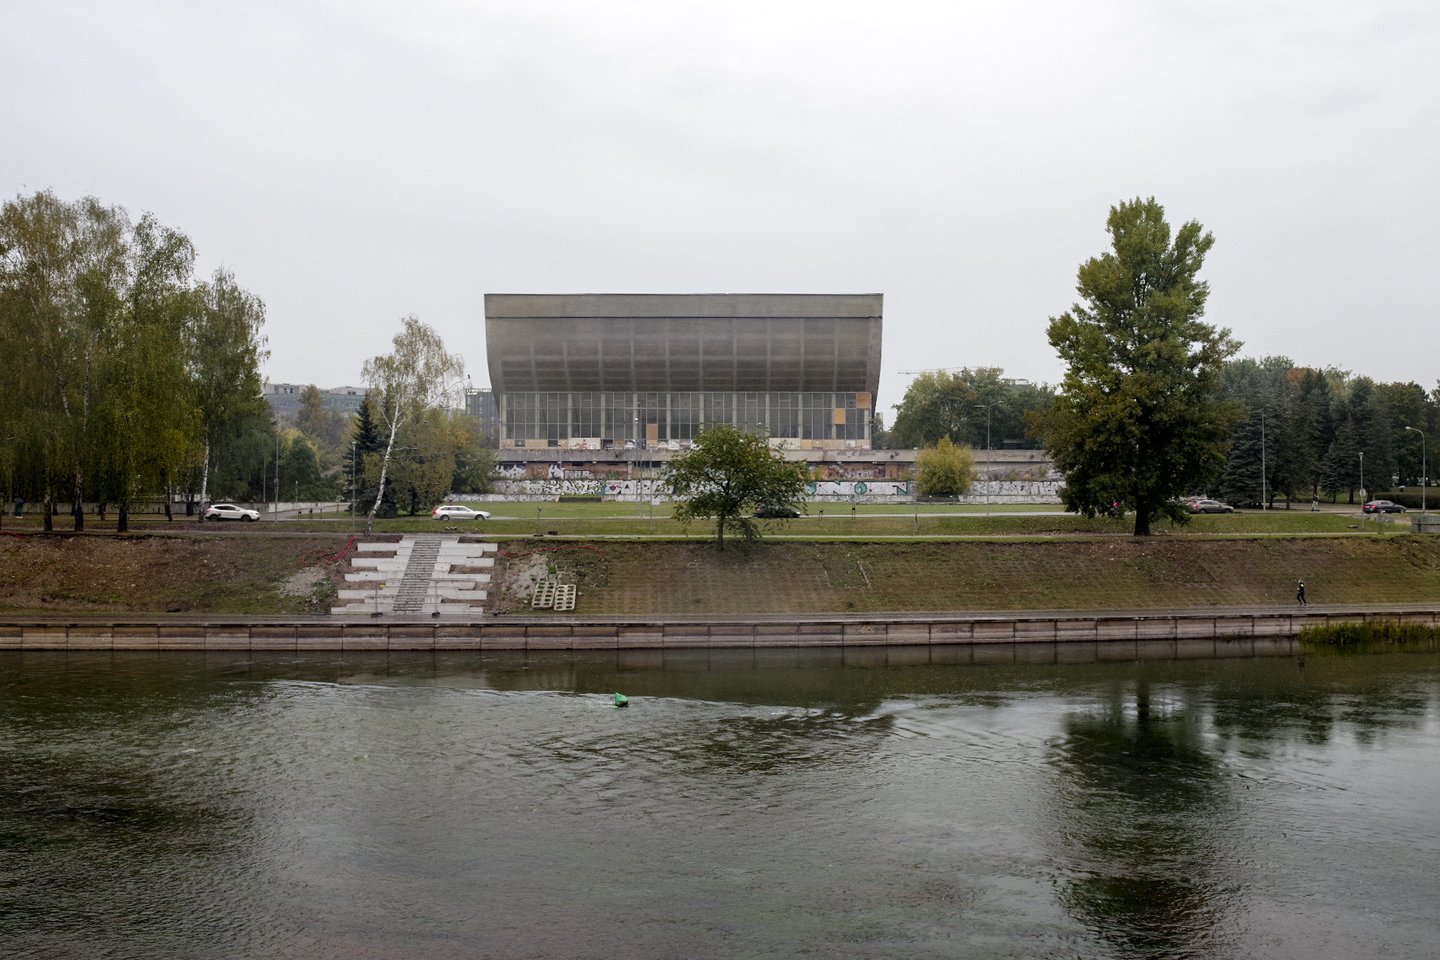 Kol Vyriausybė apsispręs dėl tolesnės Vilniaus koncertų ir sporto rūmų ateities, Turto bankas, kuris rūpinasi šio kultūros paveldo pastato būkle, planuoja atlikti būtiniausius pastato tvarkymo ir konservavimo darbus.<br>V.Ščiavinsko nuotr.